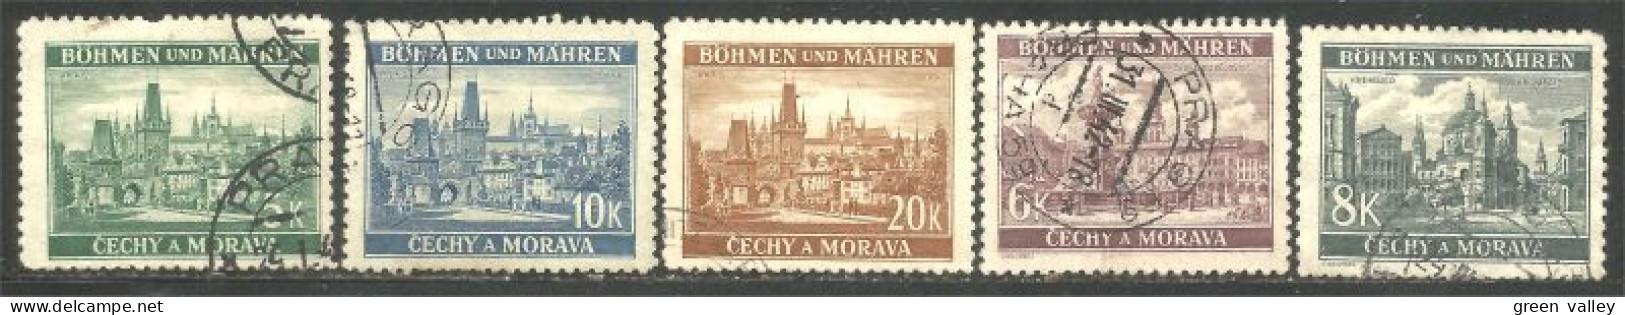 290 Bohmen Mahren Monuments 1939-40 (CZE-403) - Usados